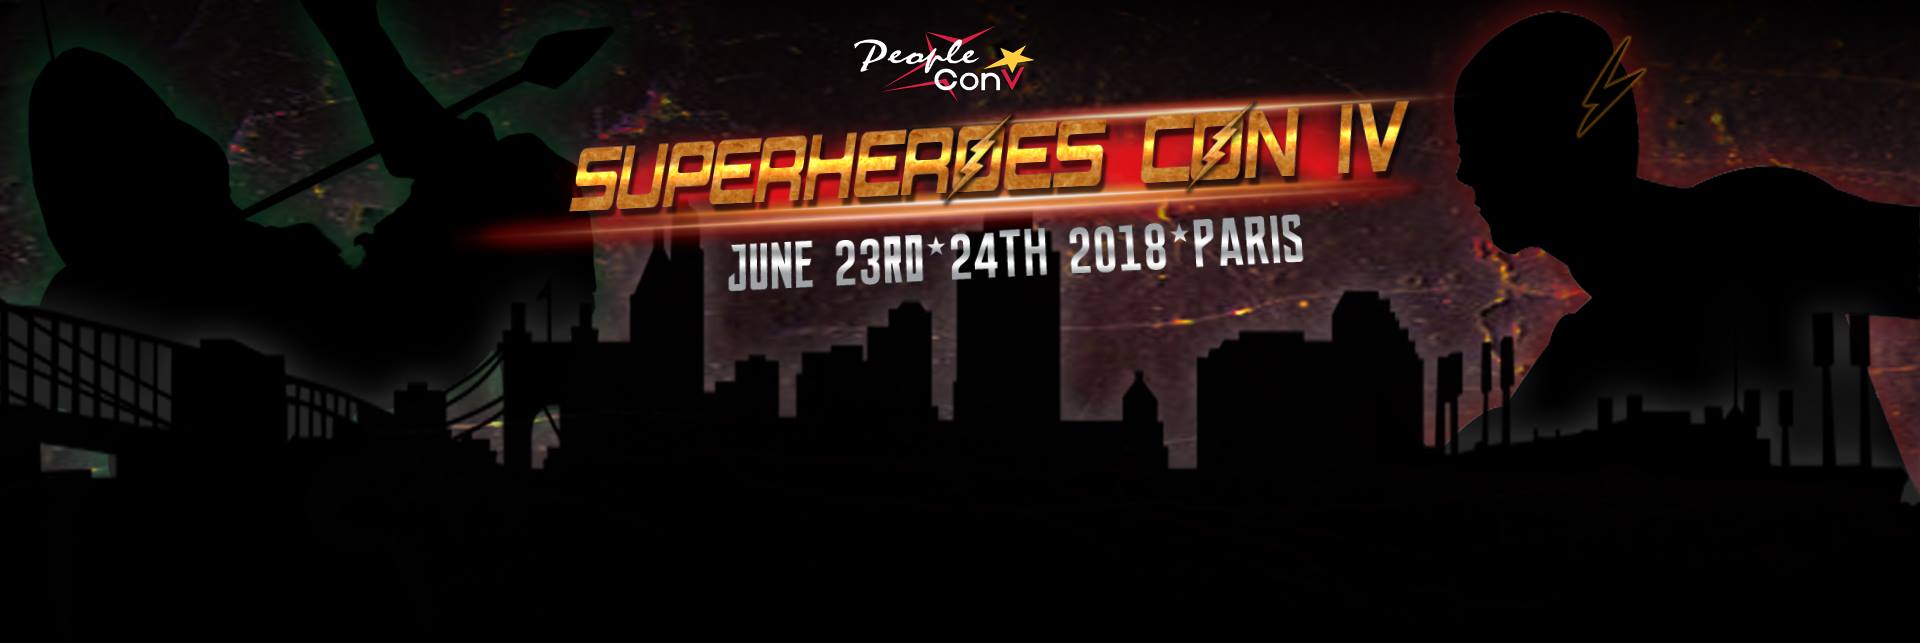 La Super Heroes Con de People Convention revient pour une 4e édition